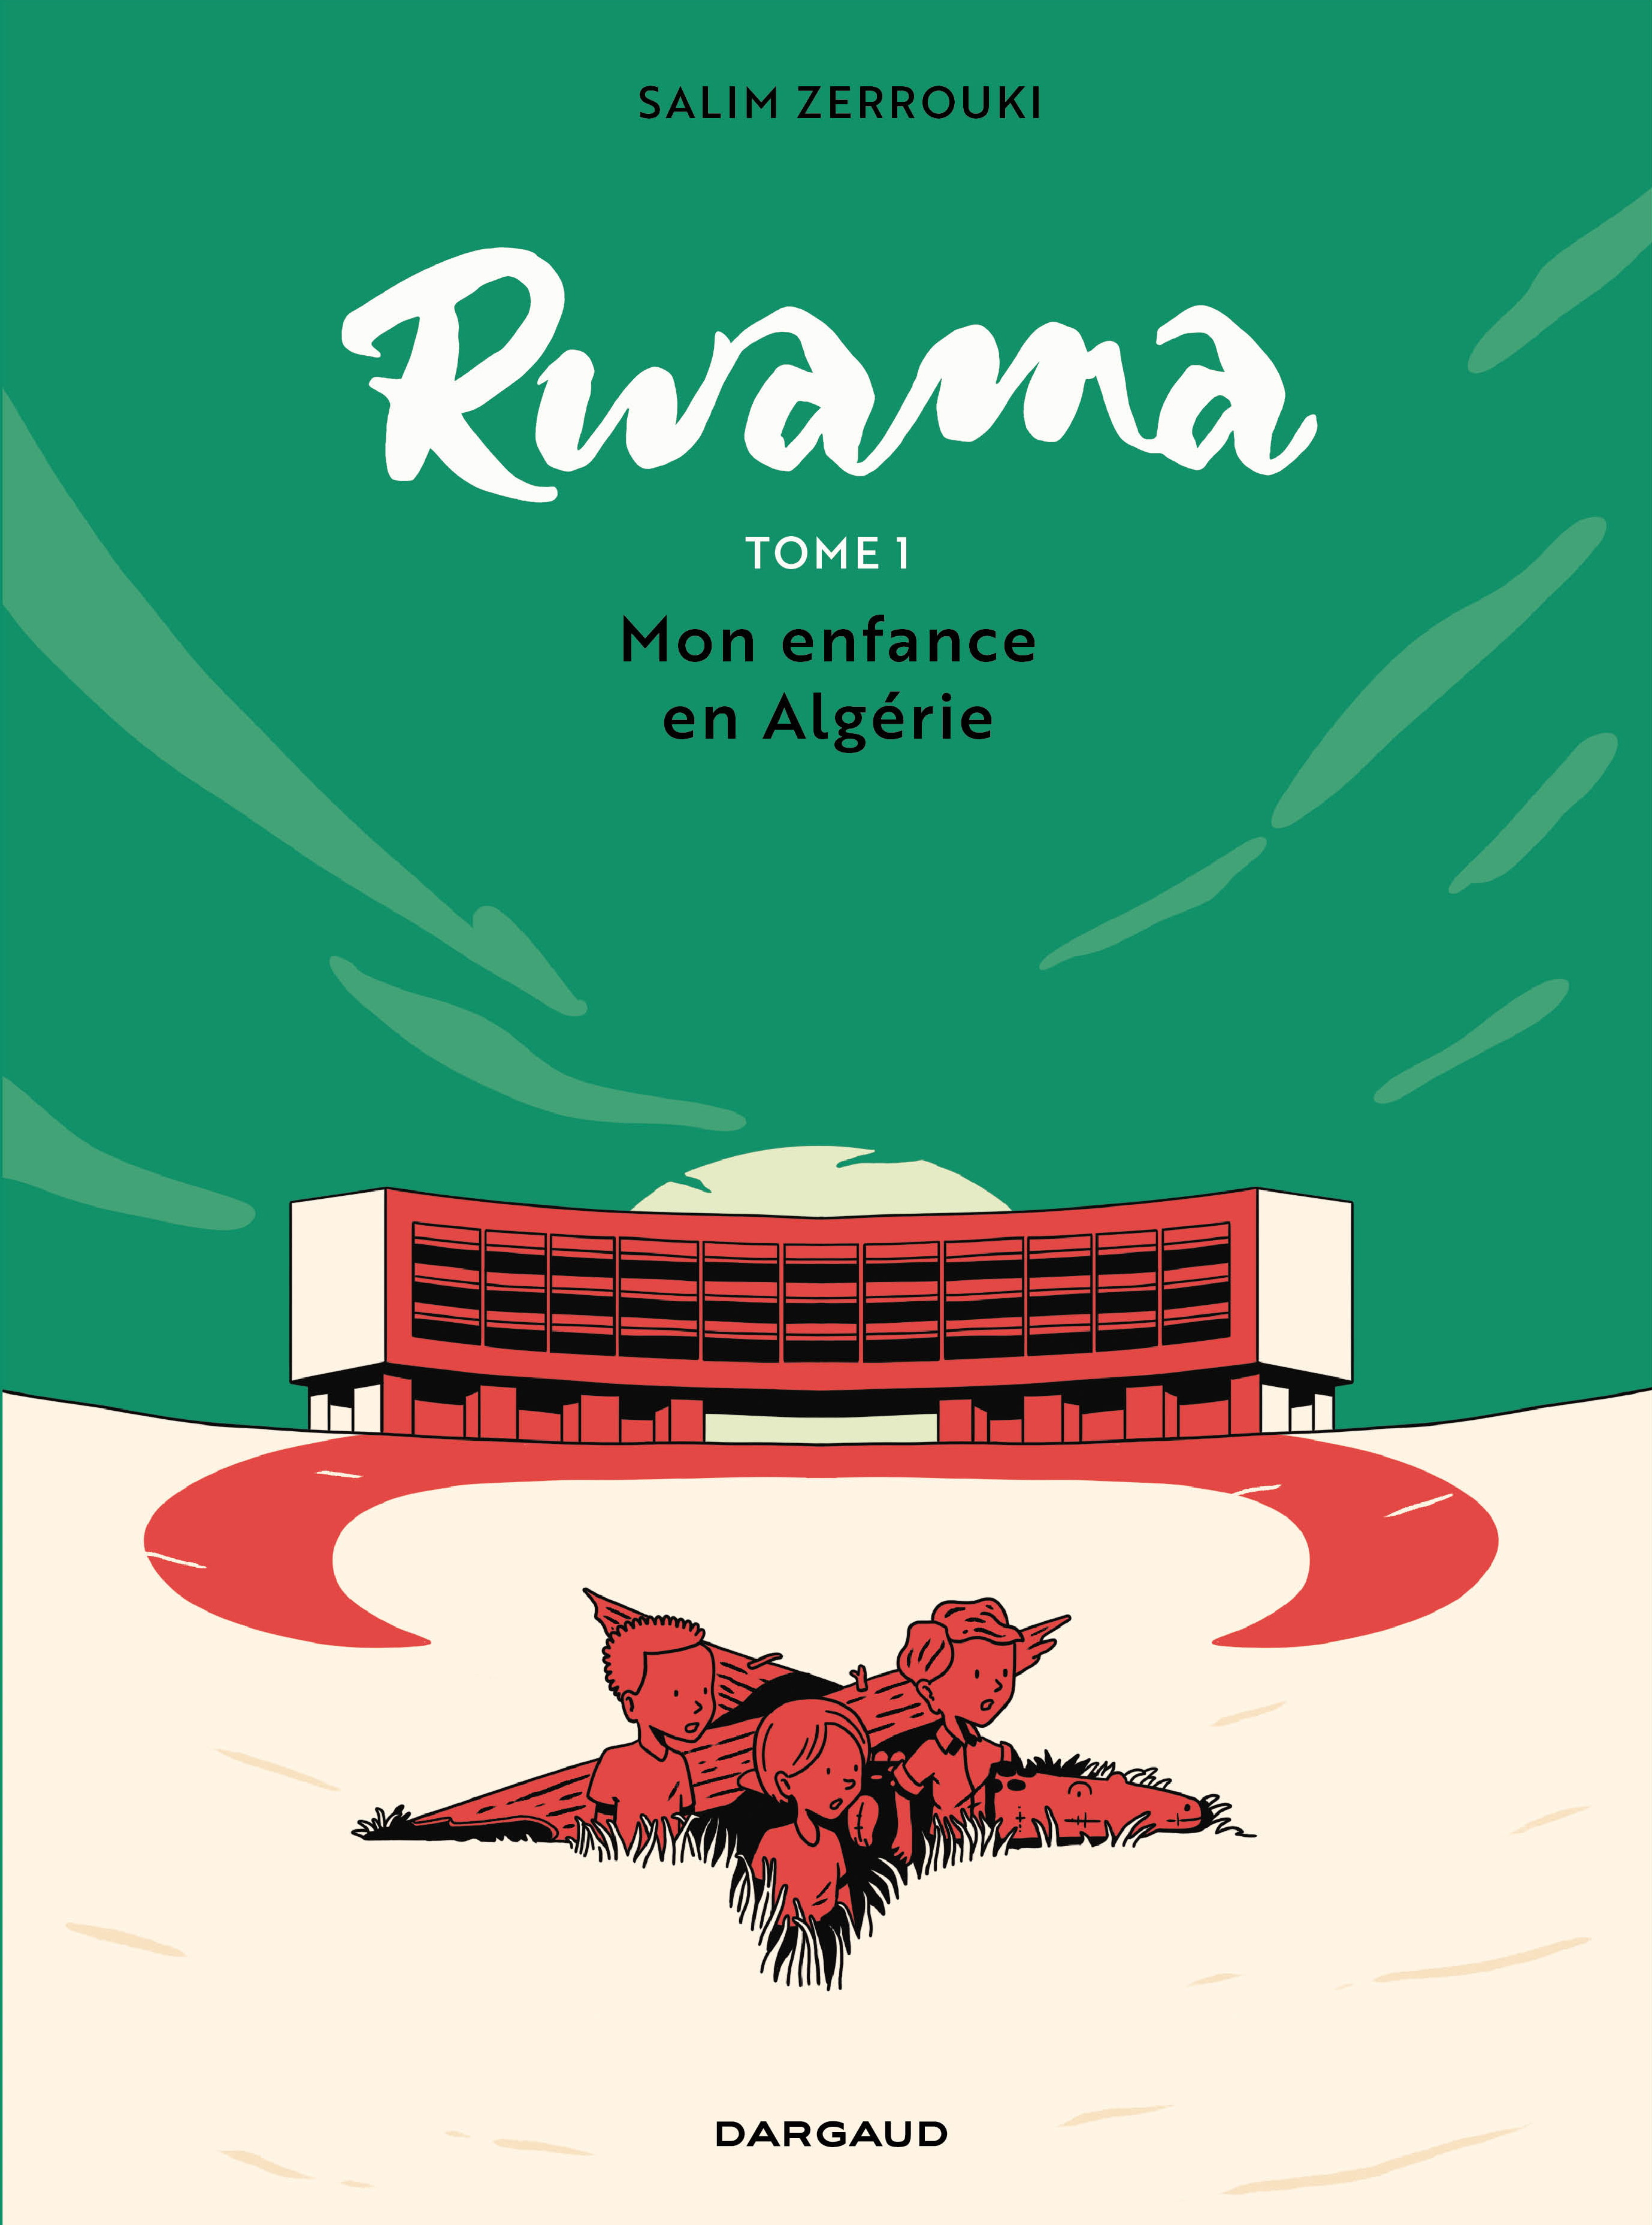 Rwama – Tome 1 – Mon enfance en Algérie (1975-1992) - couv